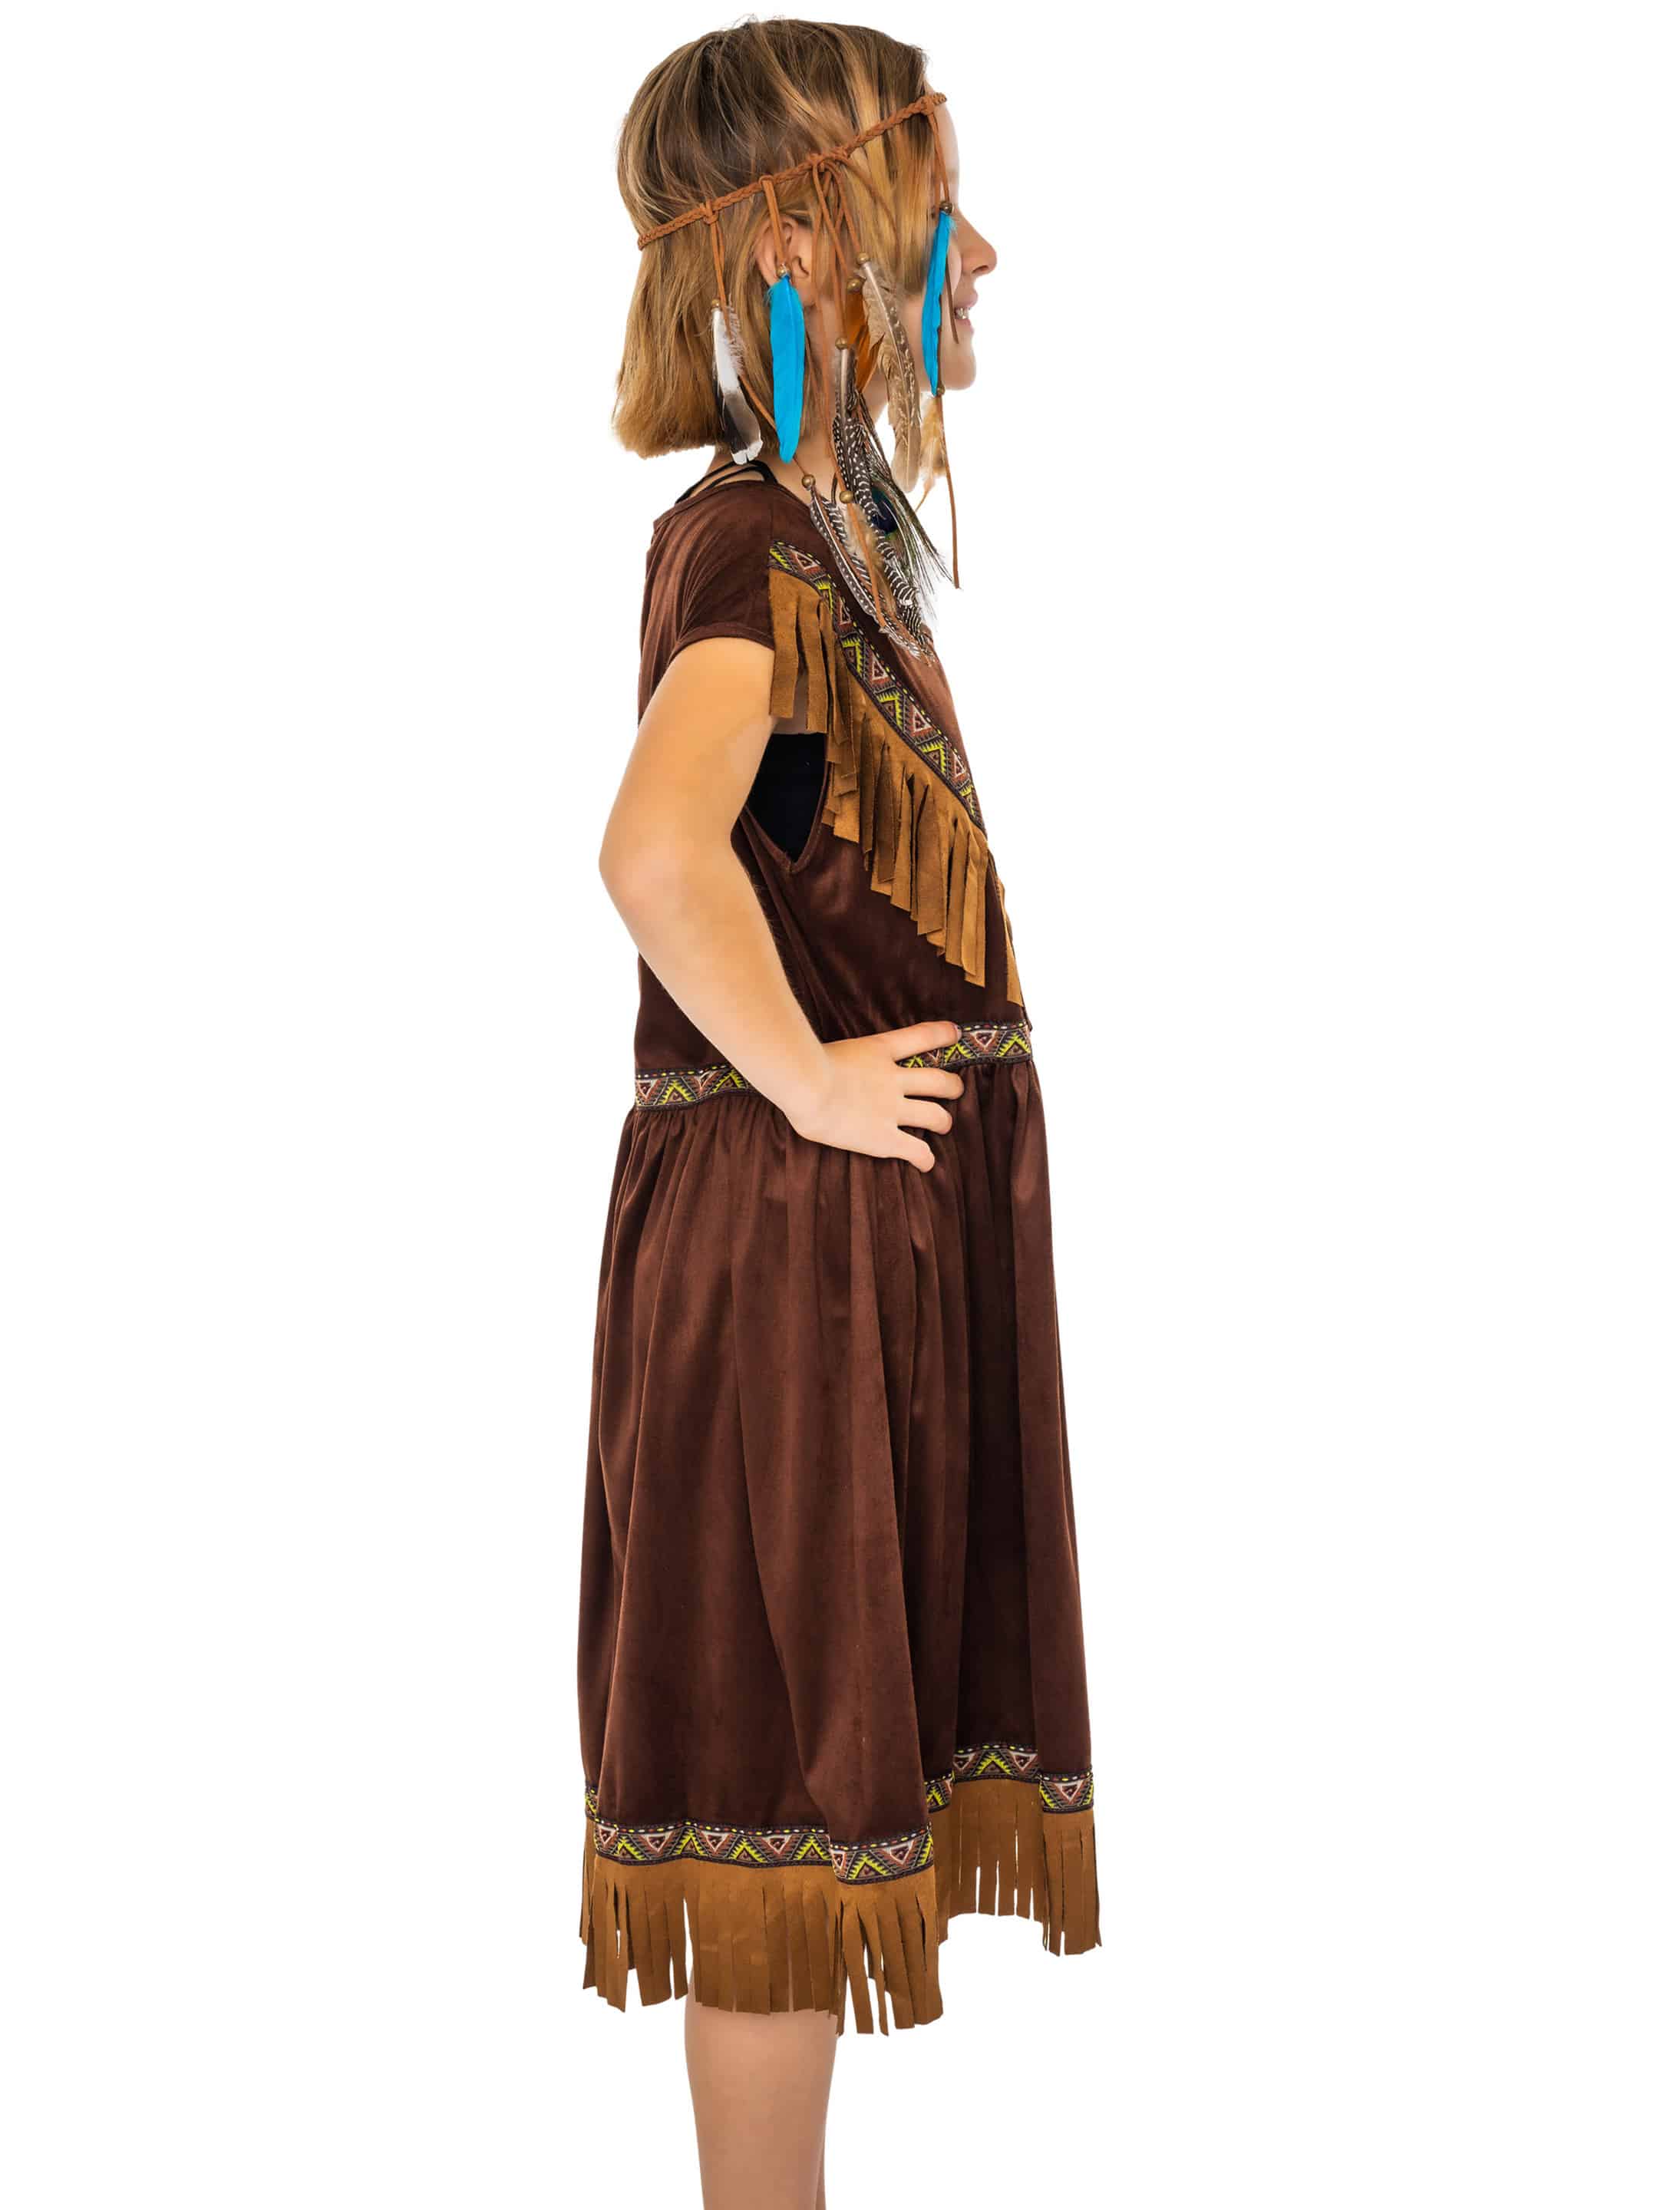 Kleid Indianerin Tahki Kinder Mädchen braun 128